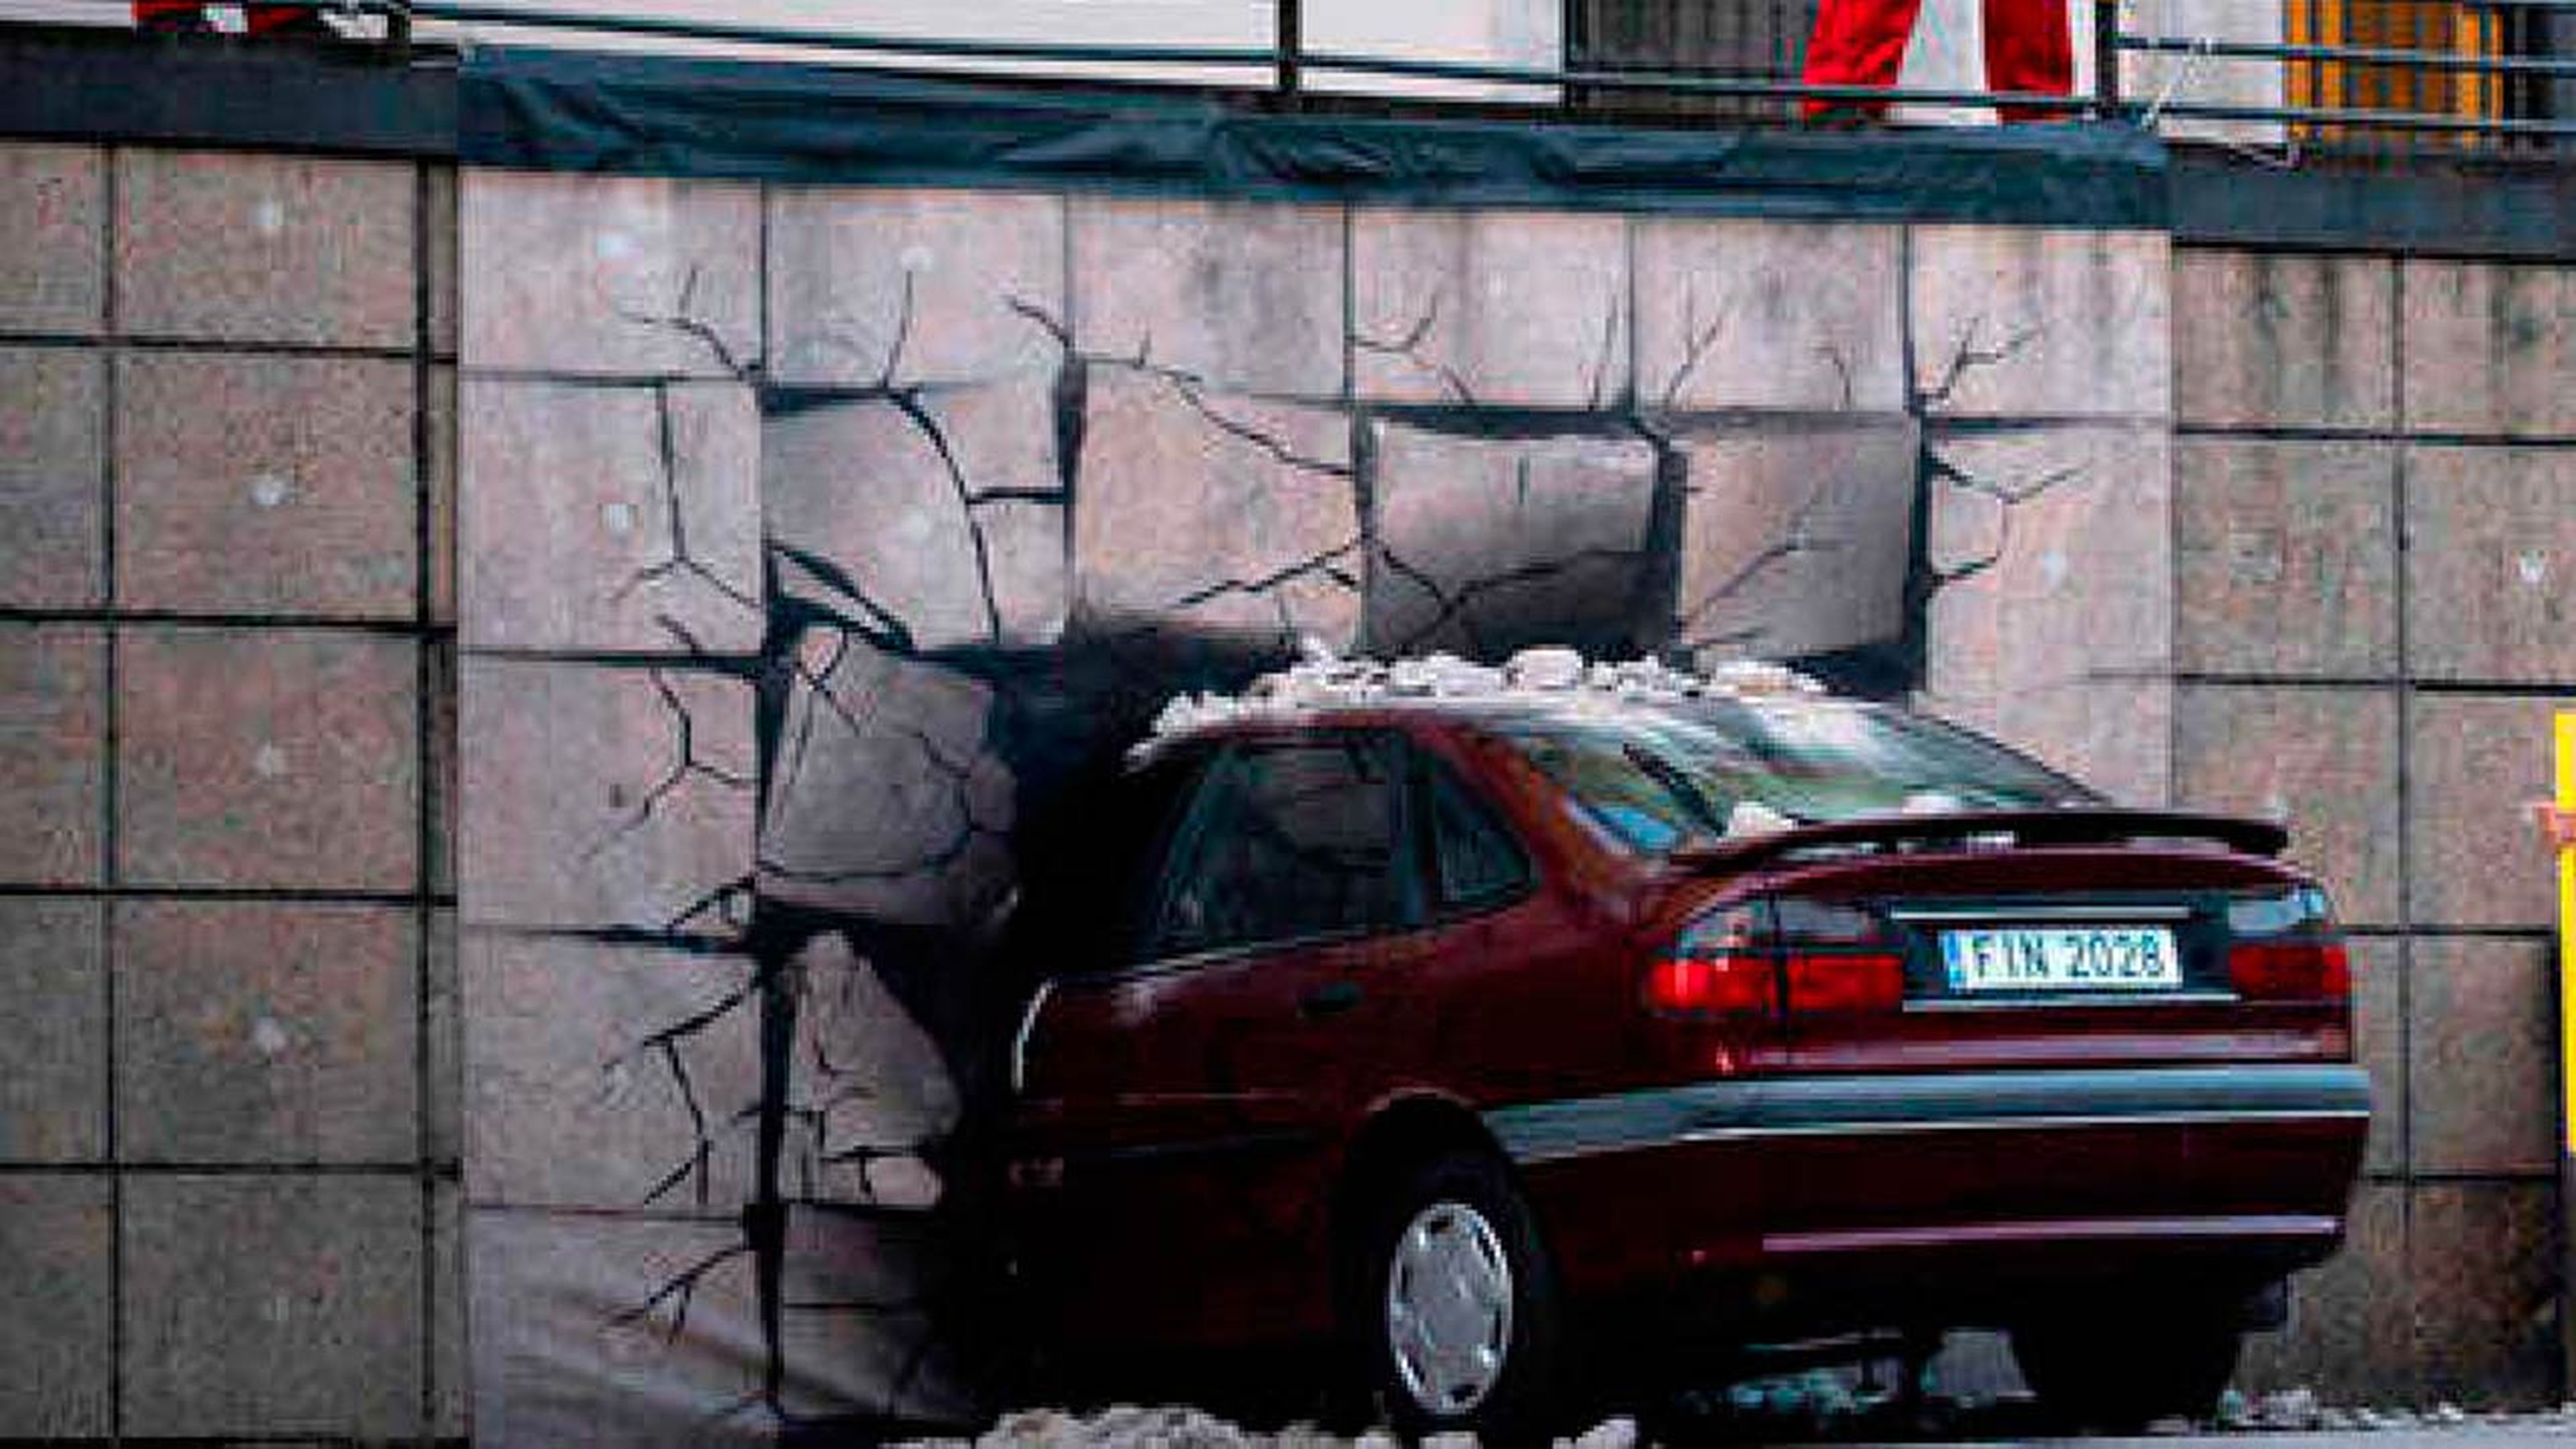 Greenpeace estrella coche en Reina Sofía